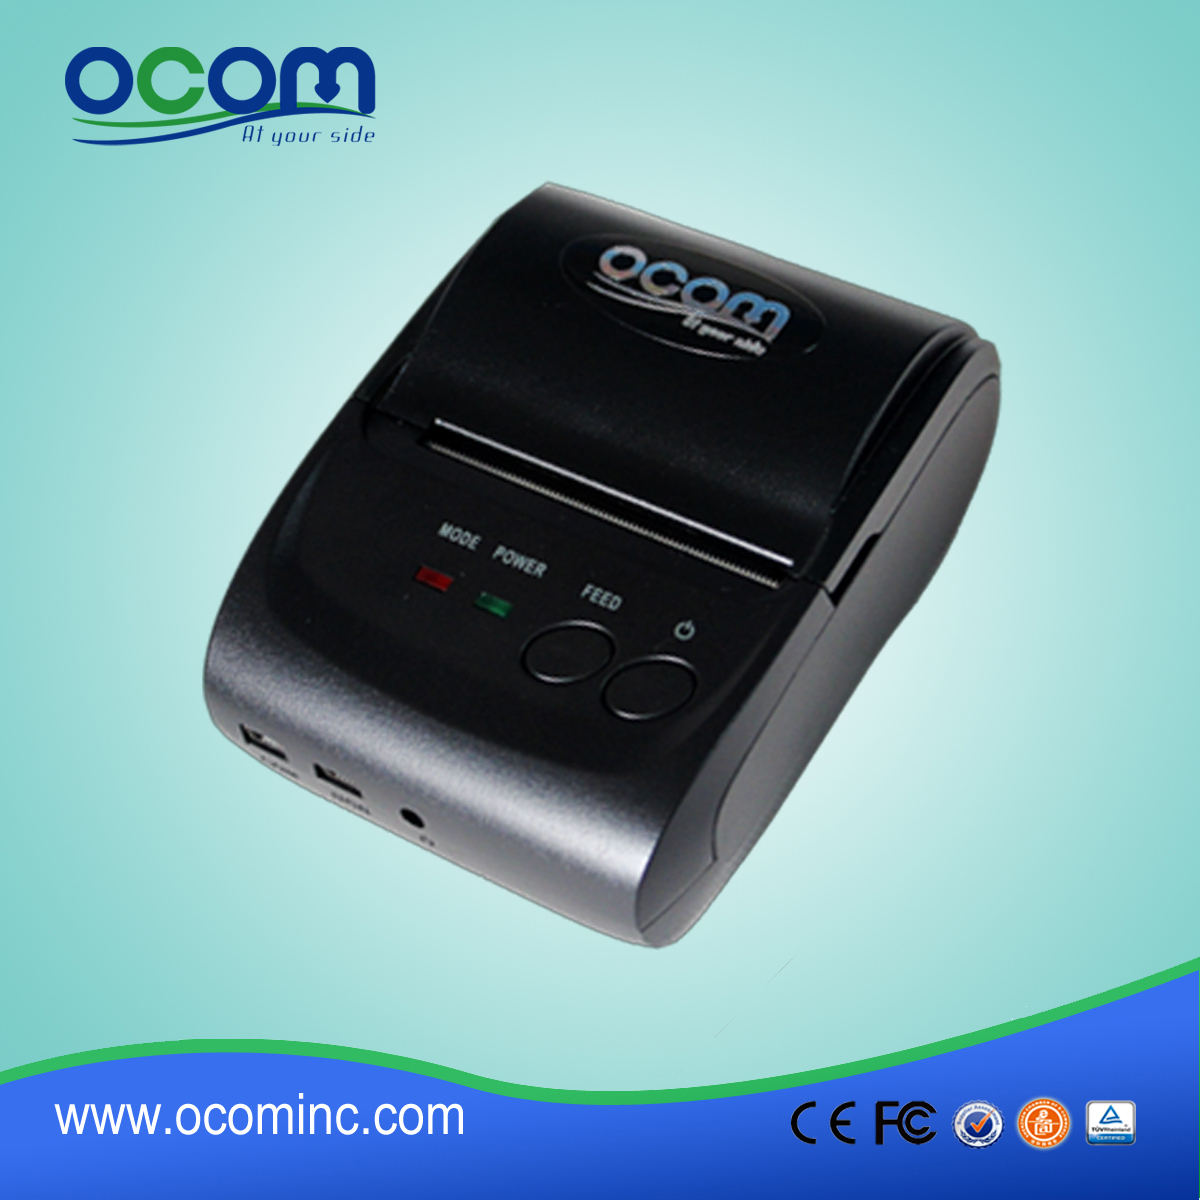 OCPP-M05: 2015 heißen Minidrucker bluetooth Positions-Drucker, WLAN-Thermodrucker